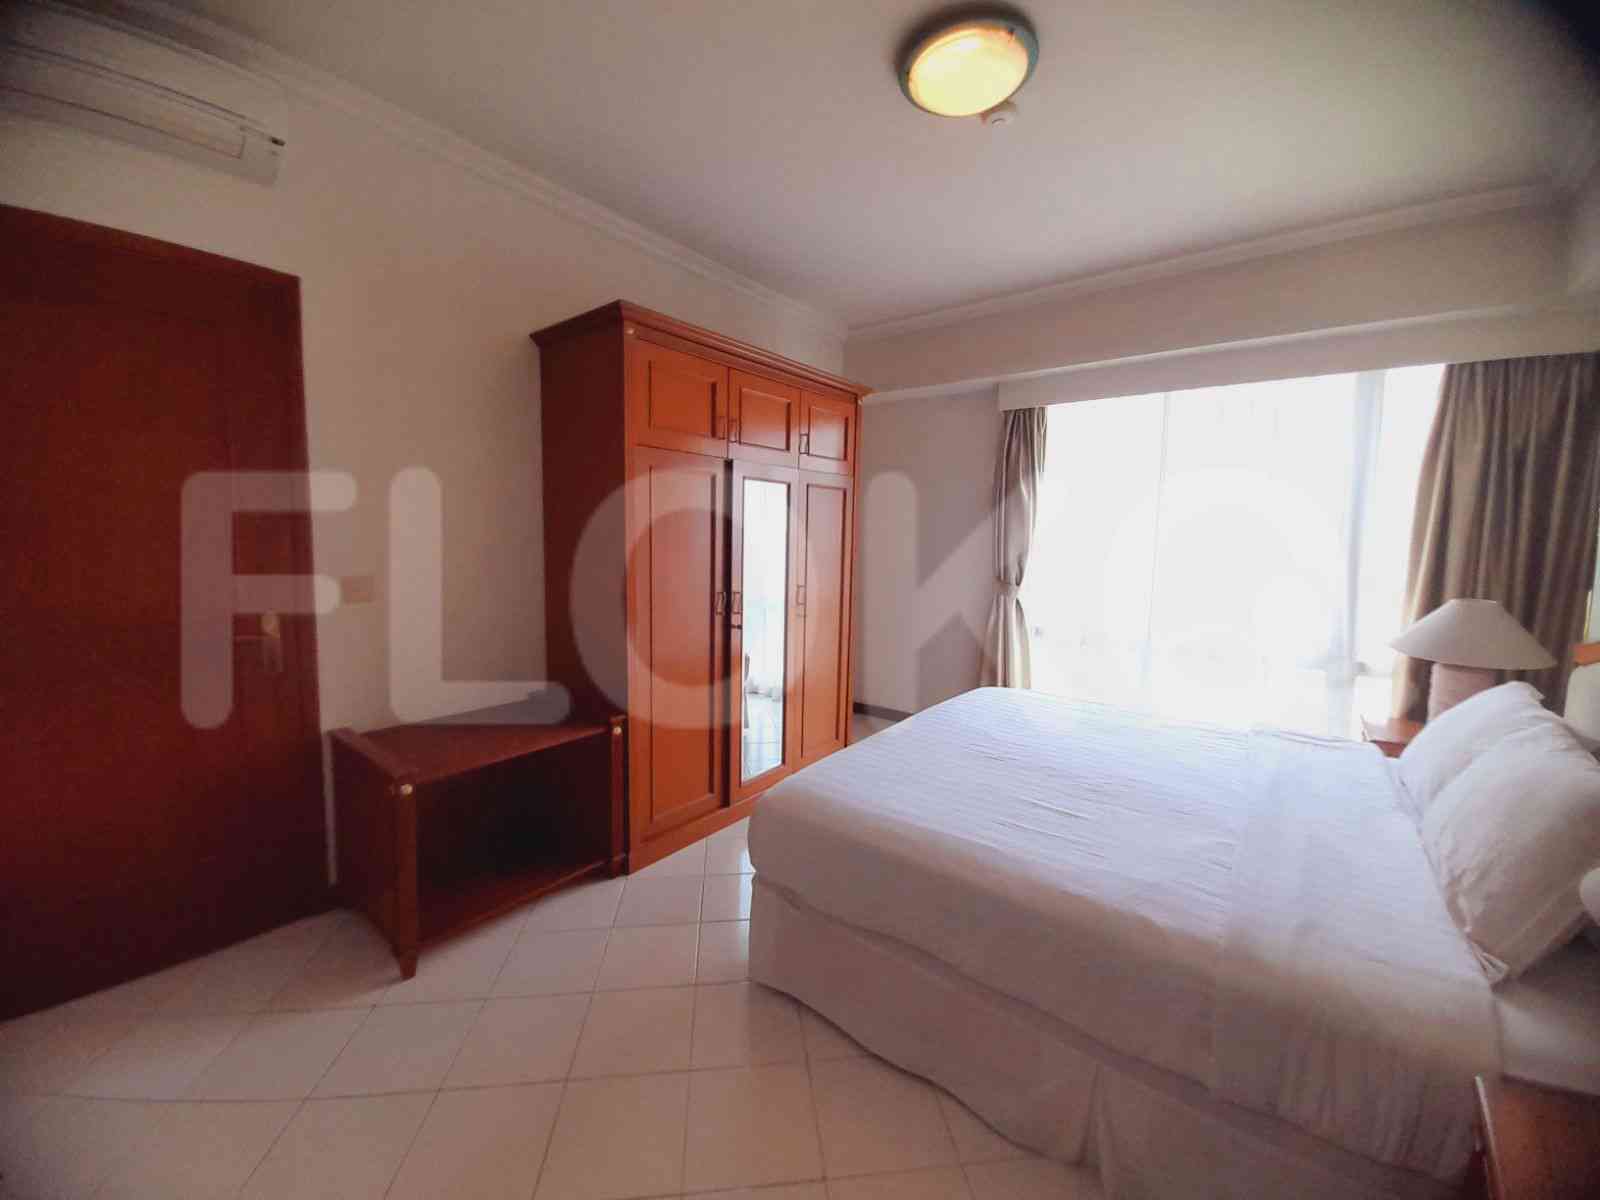 2 Bedroom on 35th Floor for Rent in Puri Casablanca - fte0f6 3